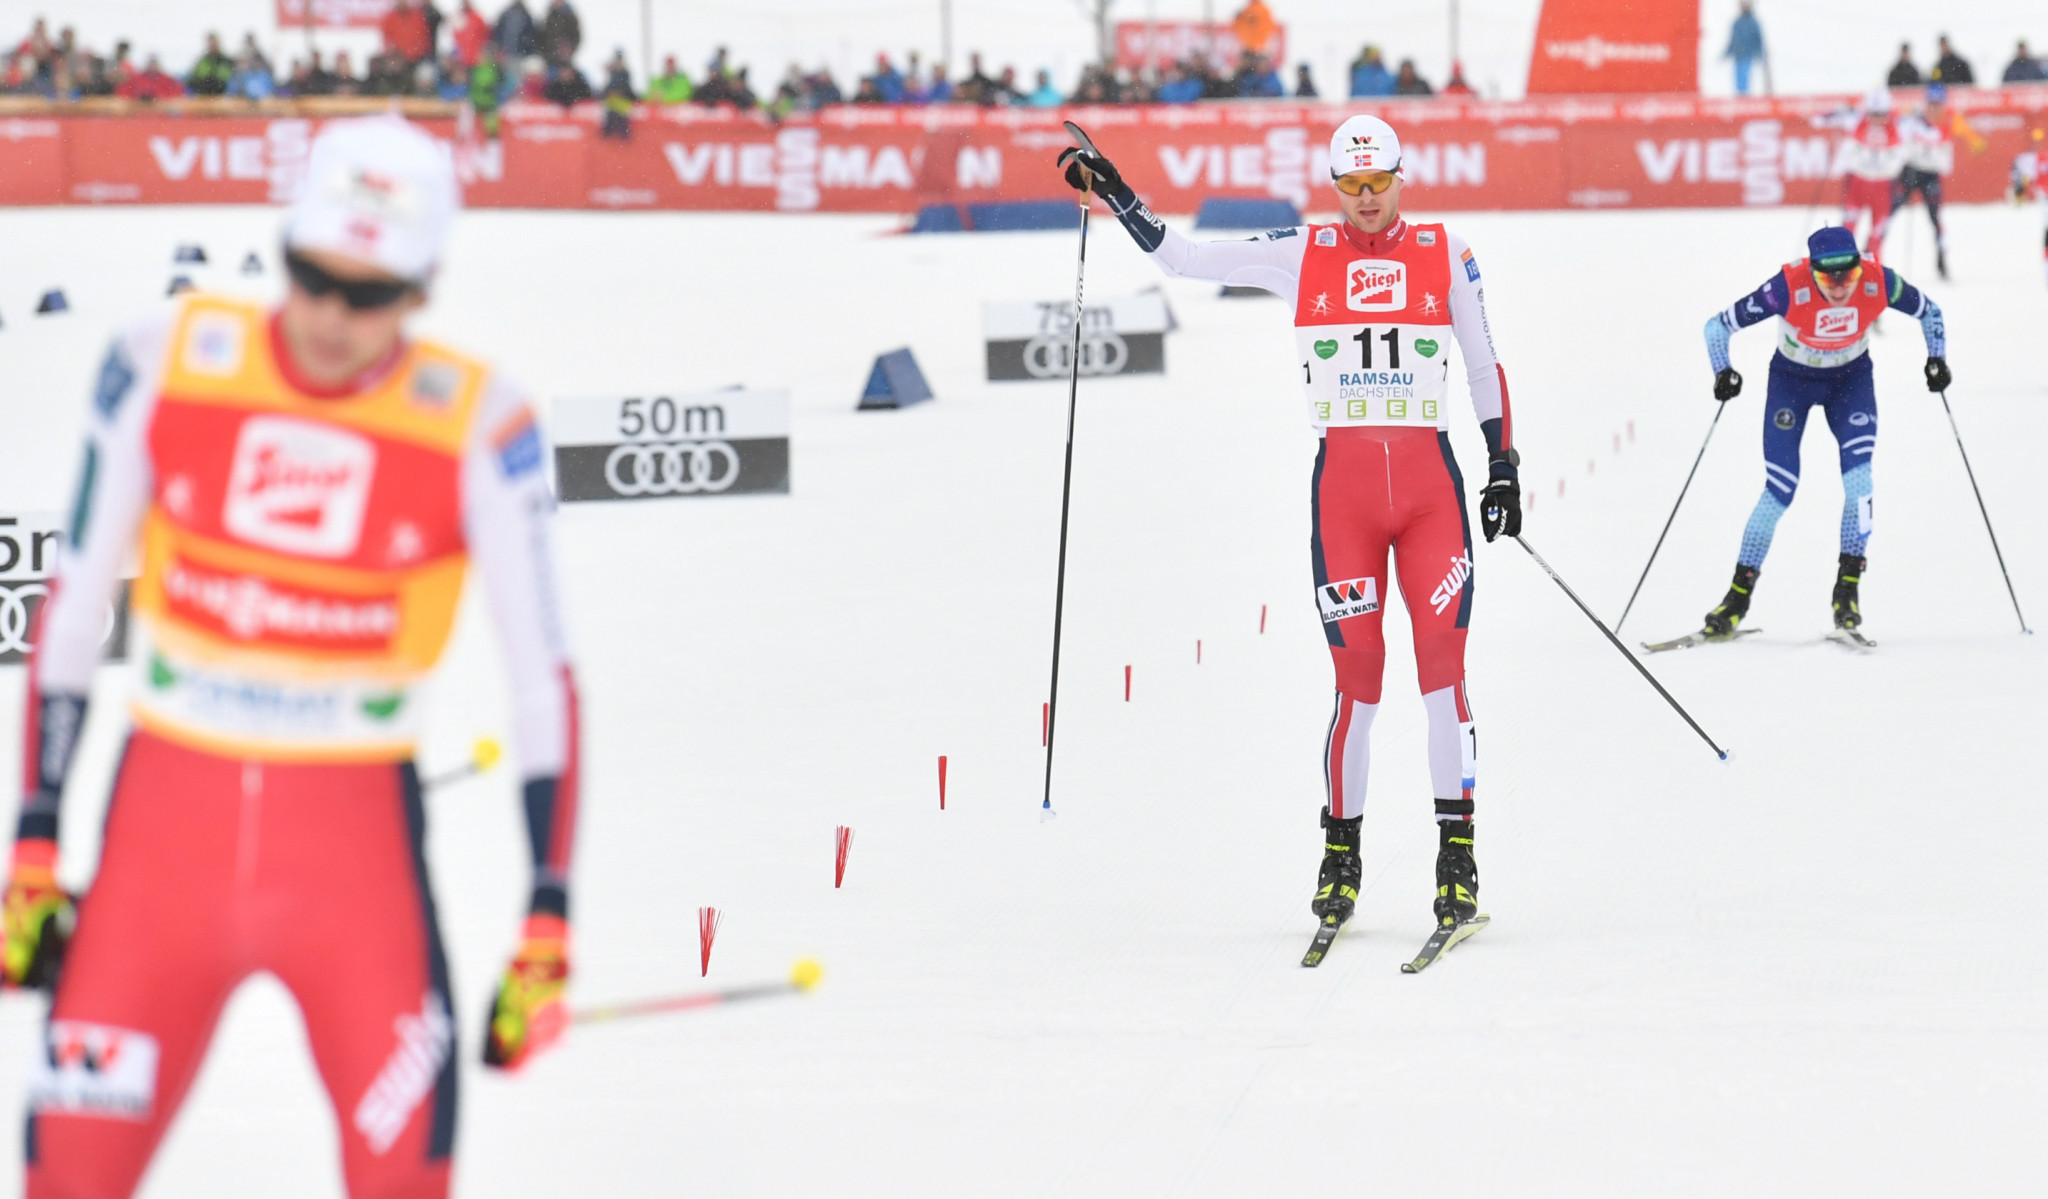 Sochi 2014 gold medallist Jørgen Graabak finished second behind compatriot Jarl Magnus Riiber ©Getty Images